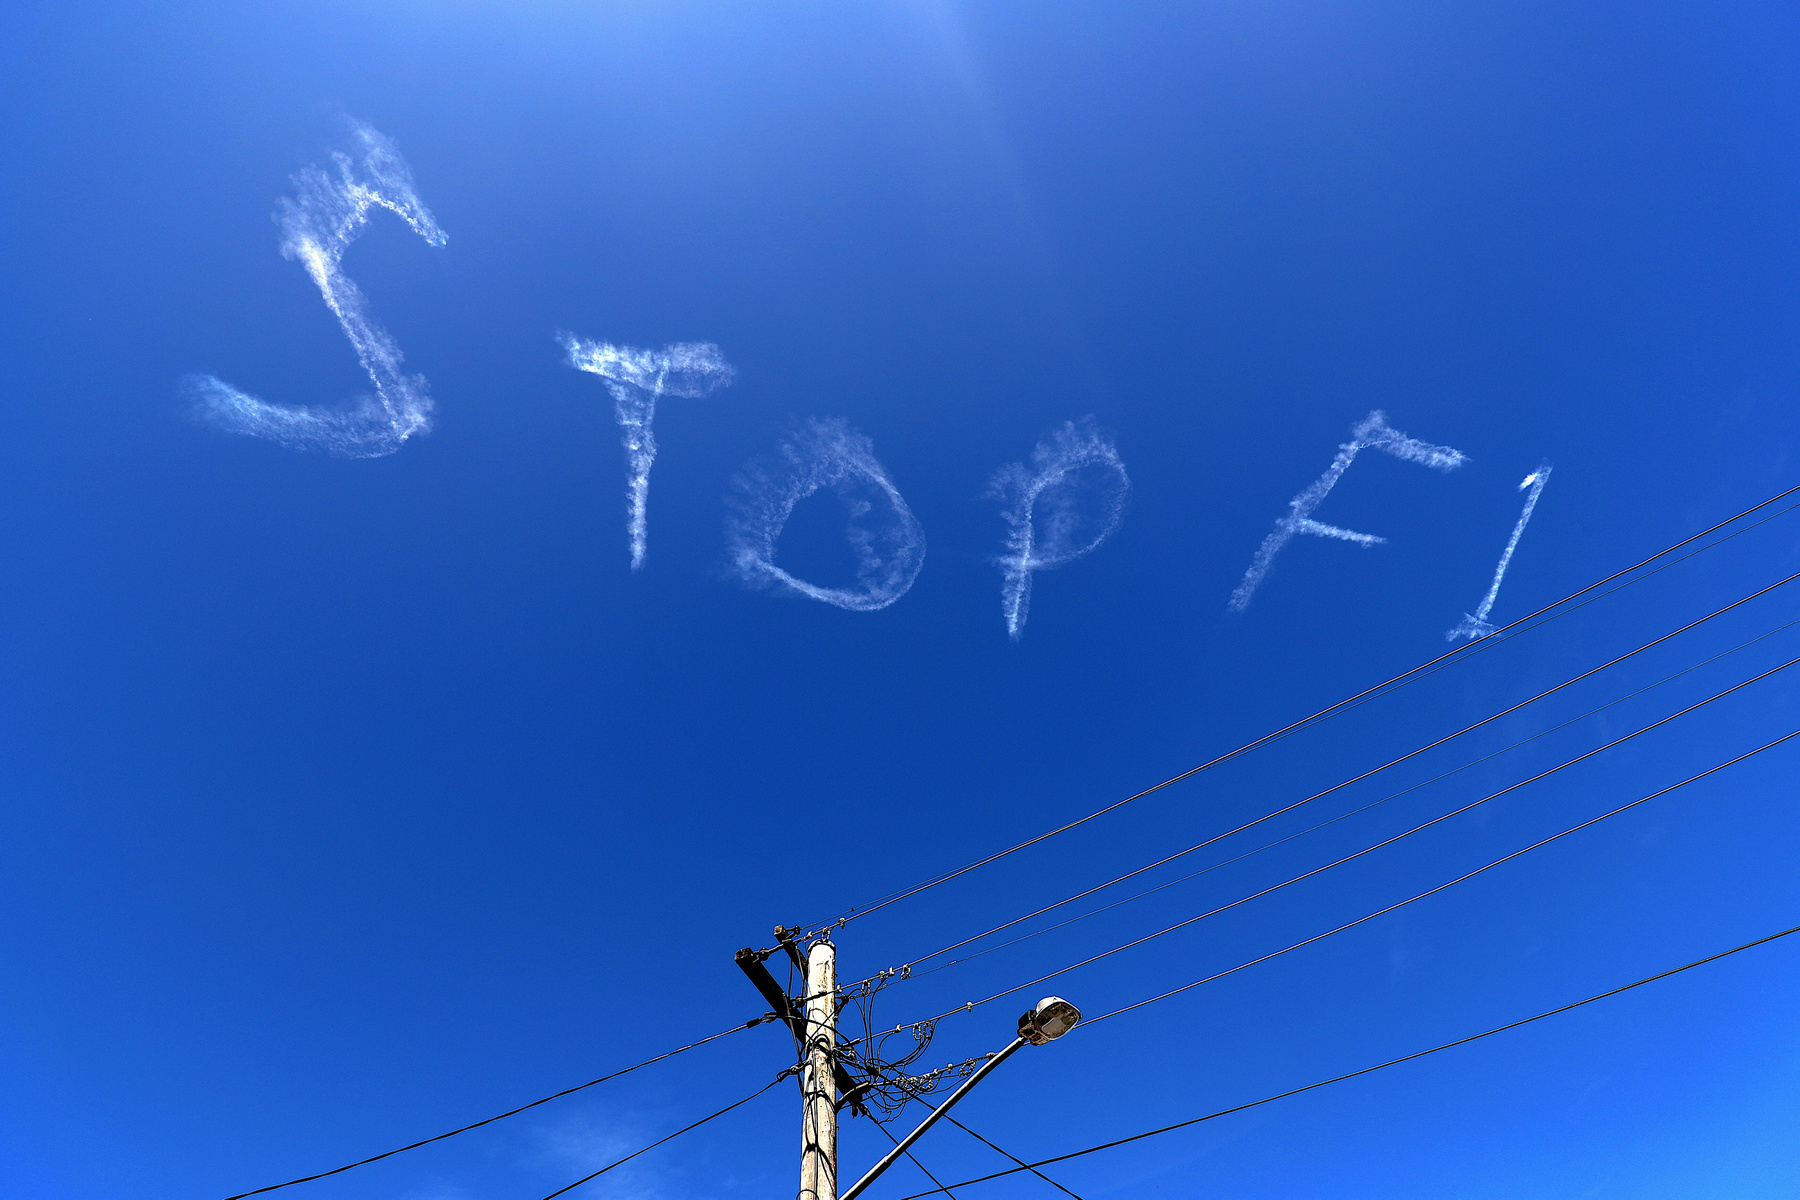 Csütörtöki égi felirat Sydney felett. Végül meghallgatták a kétségbeesett, ugyanakkor látványos kérést.